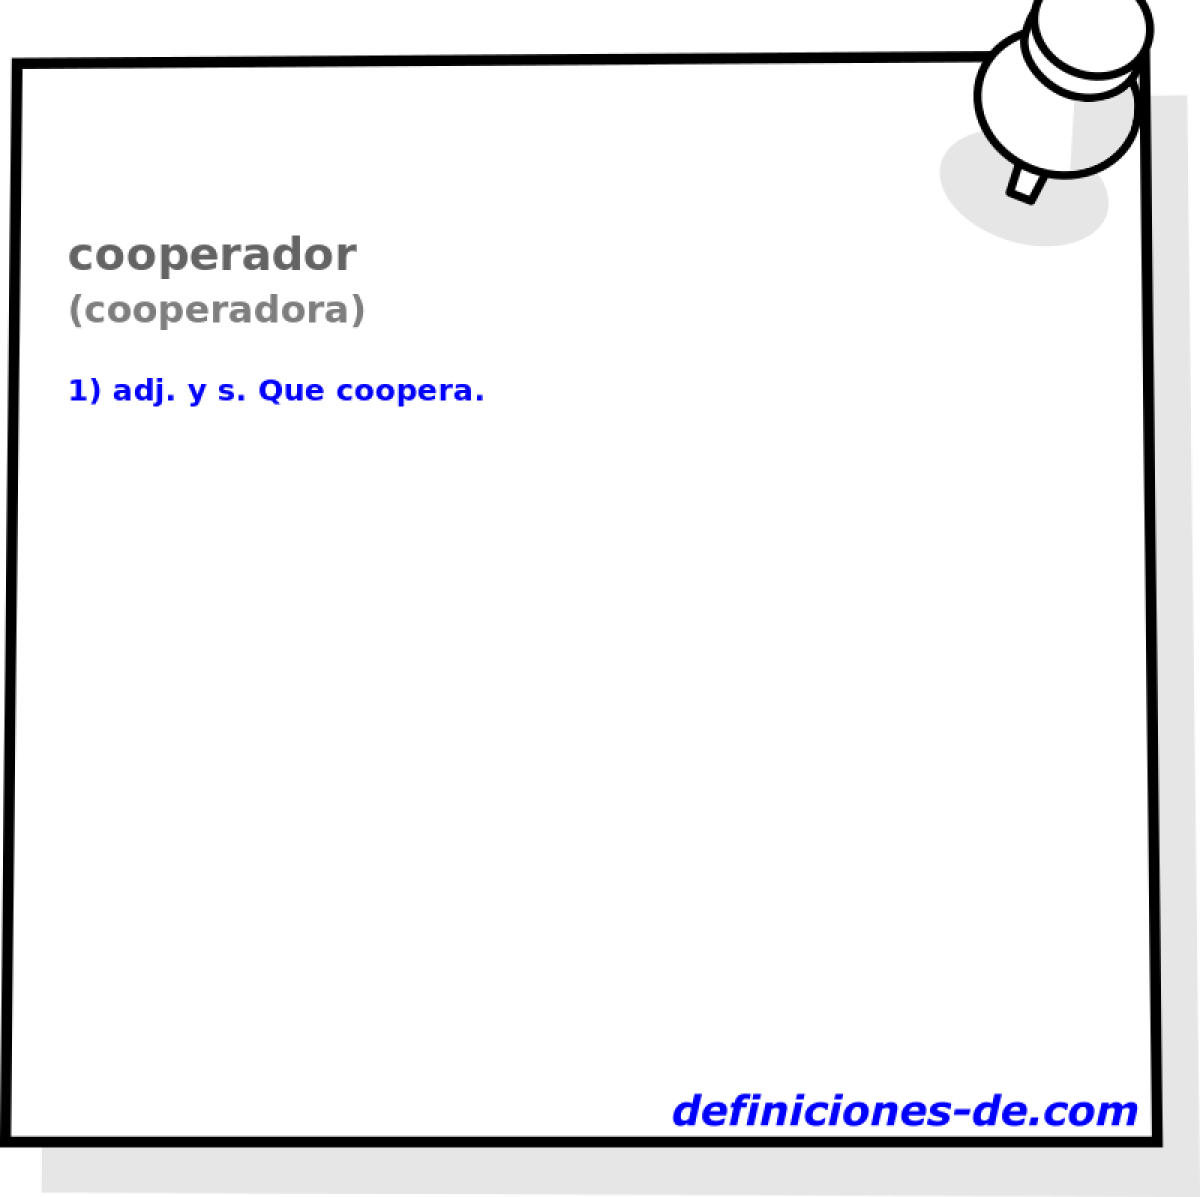 cooperador (cooperadora)